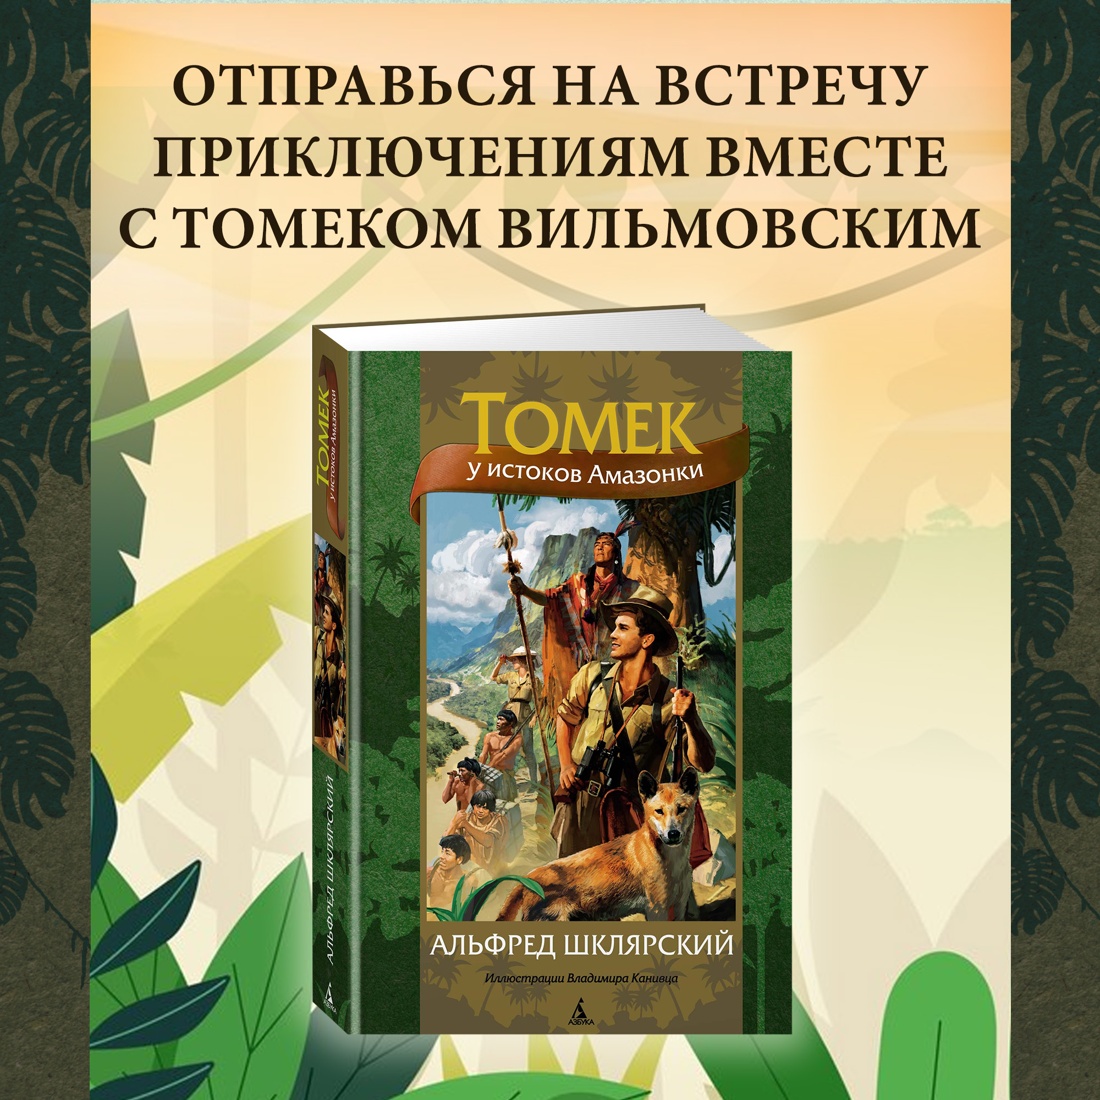 Промо материал к книге "Томек у истоков Амазонки" №0